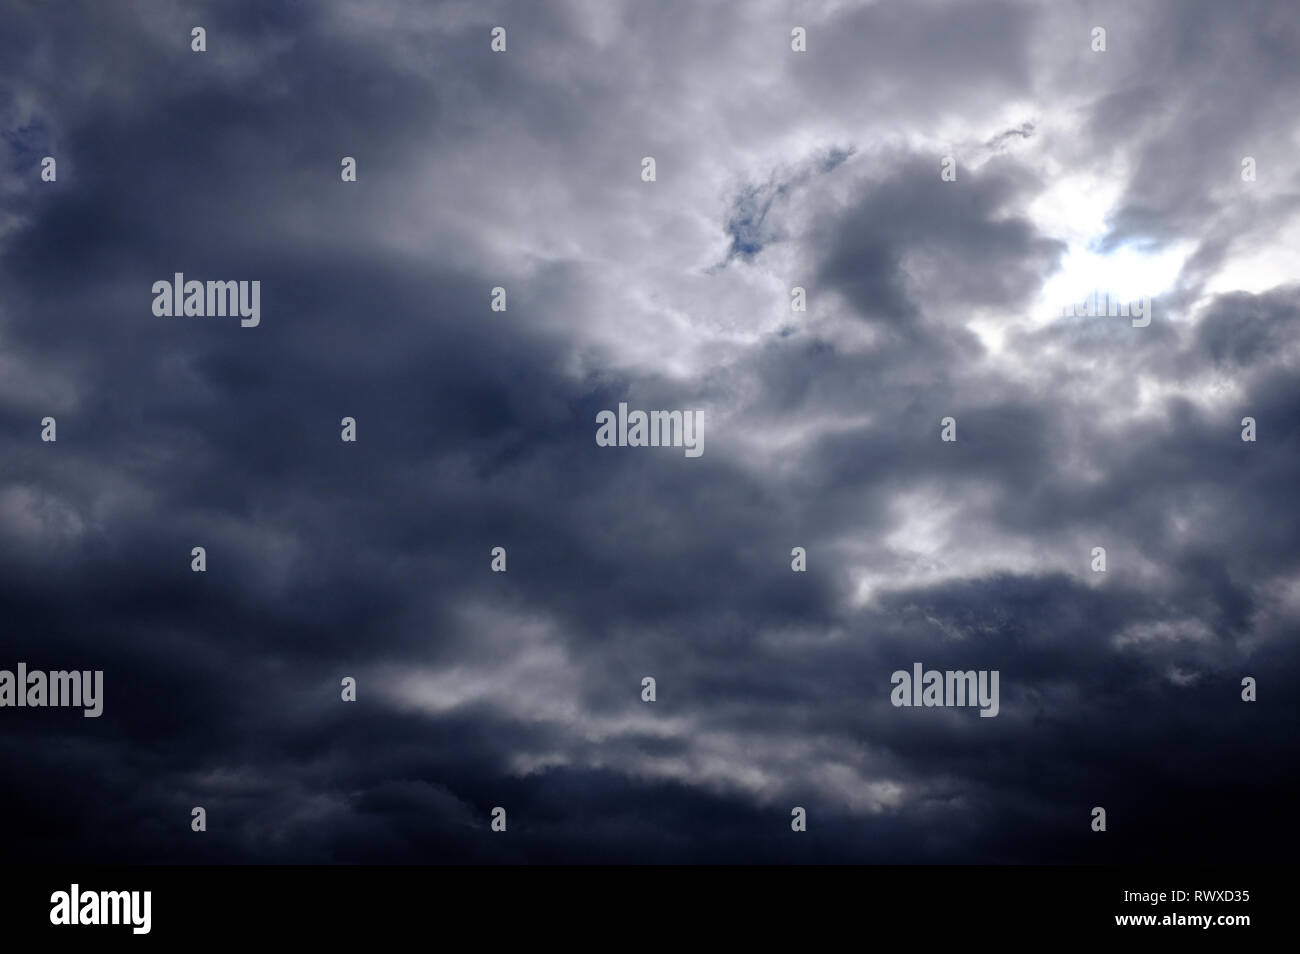 stormy sky, dark clouds background Stock Photo